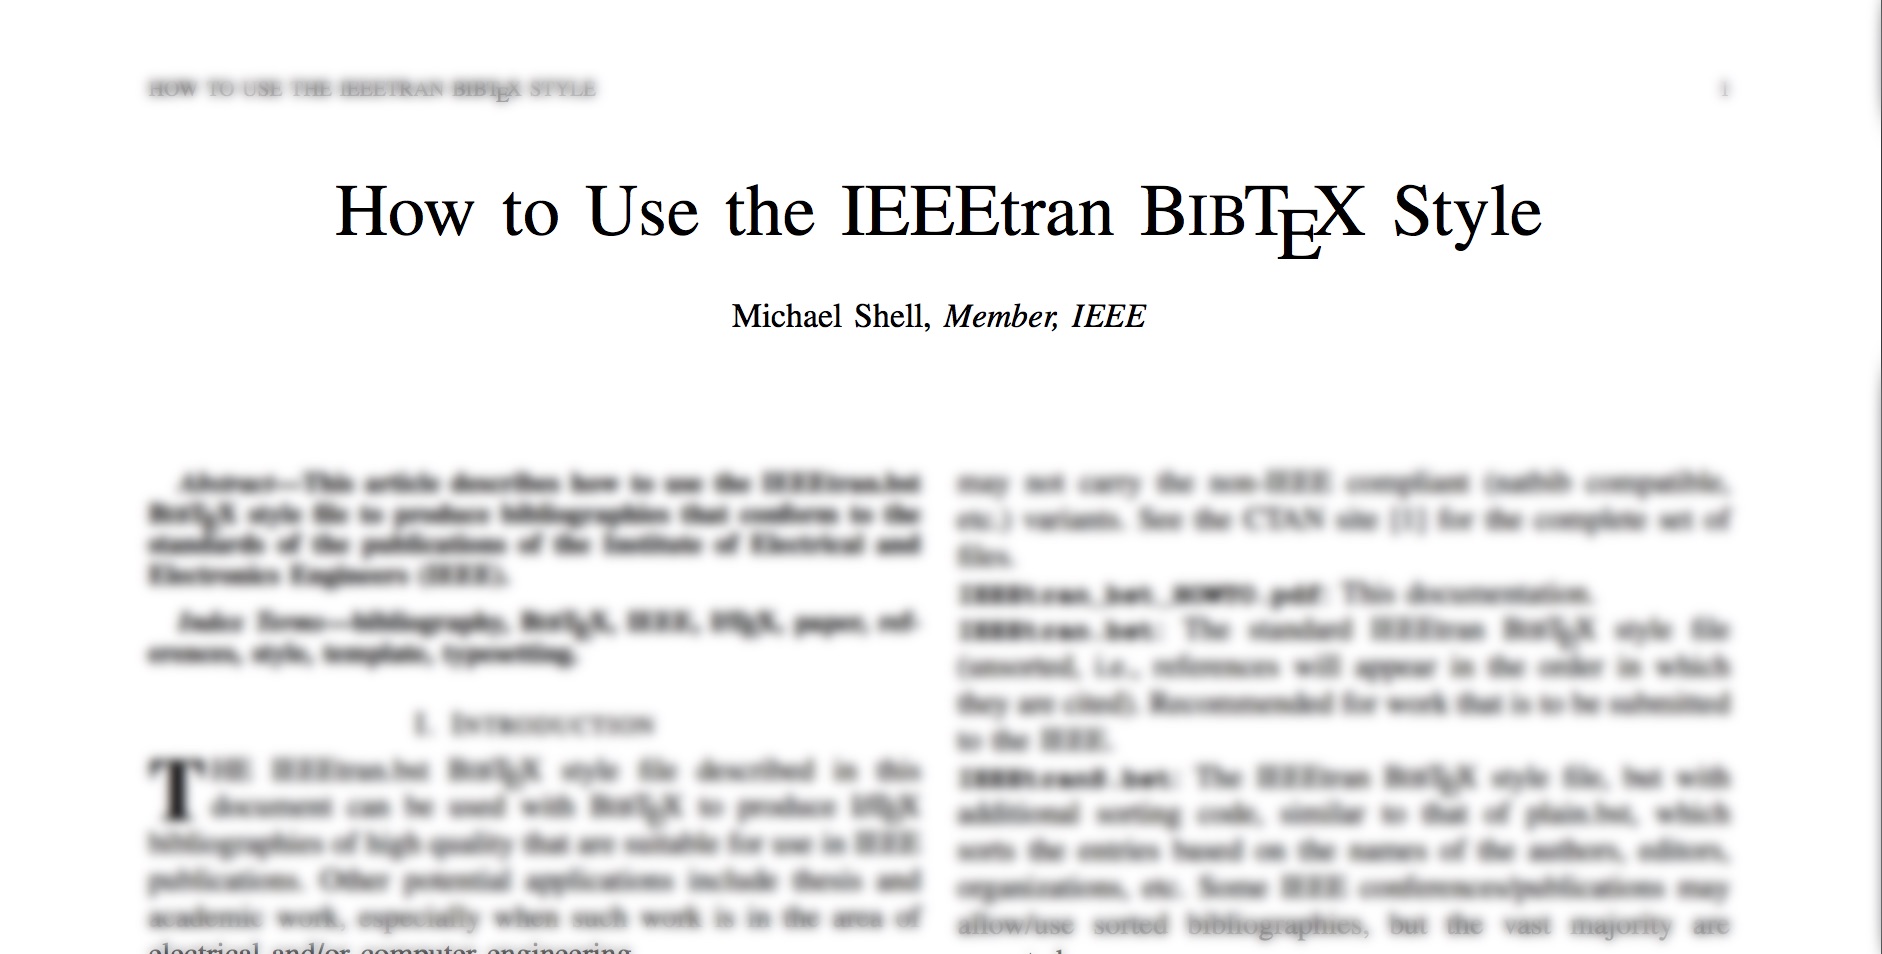 บันทึกการใช้คลาส IEEEtran บน LaTeX สำหรับ IEEE conference paper [2]